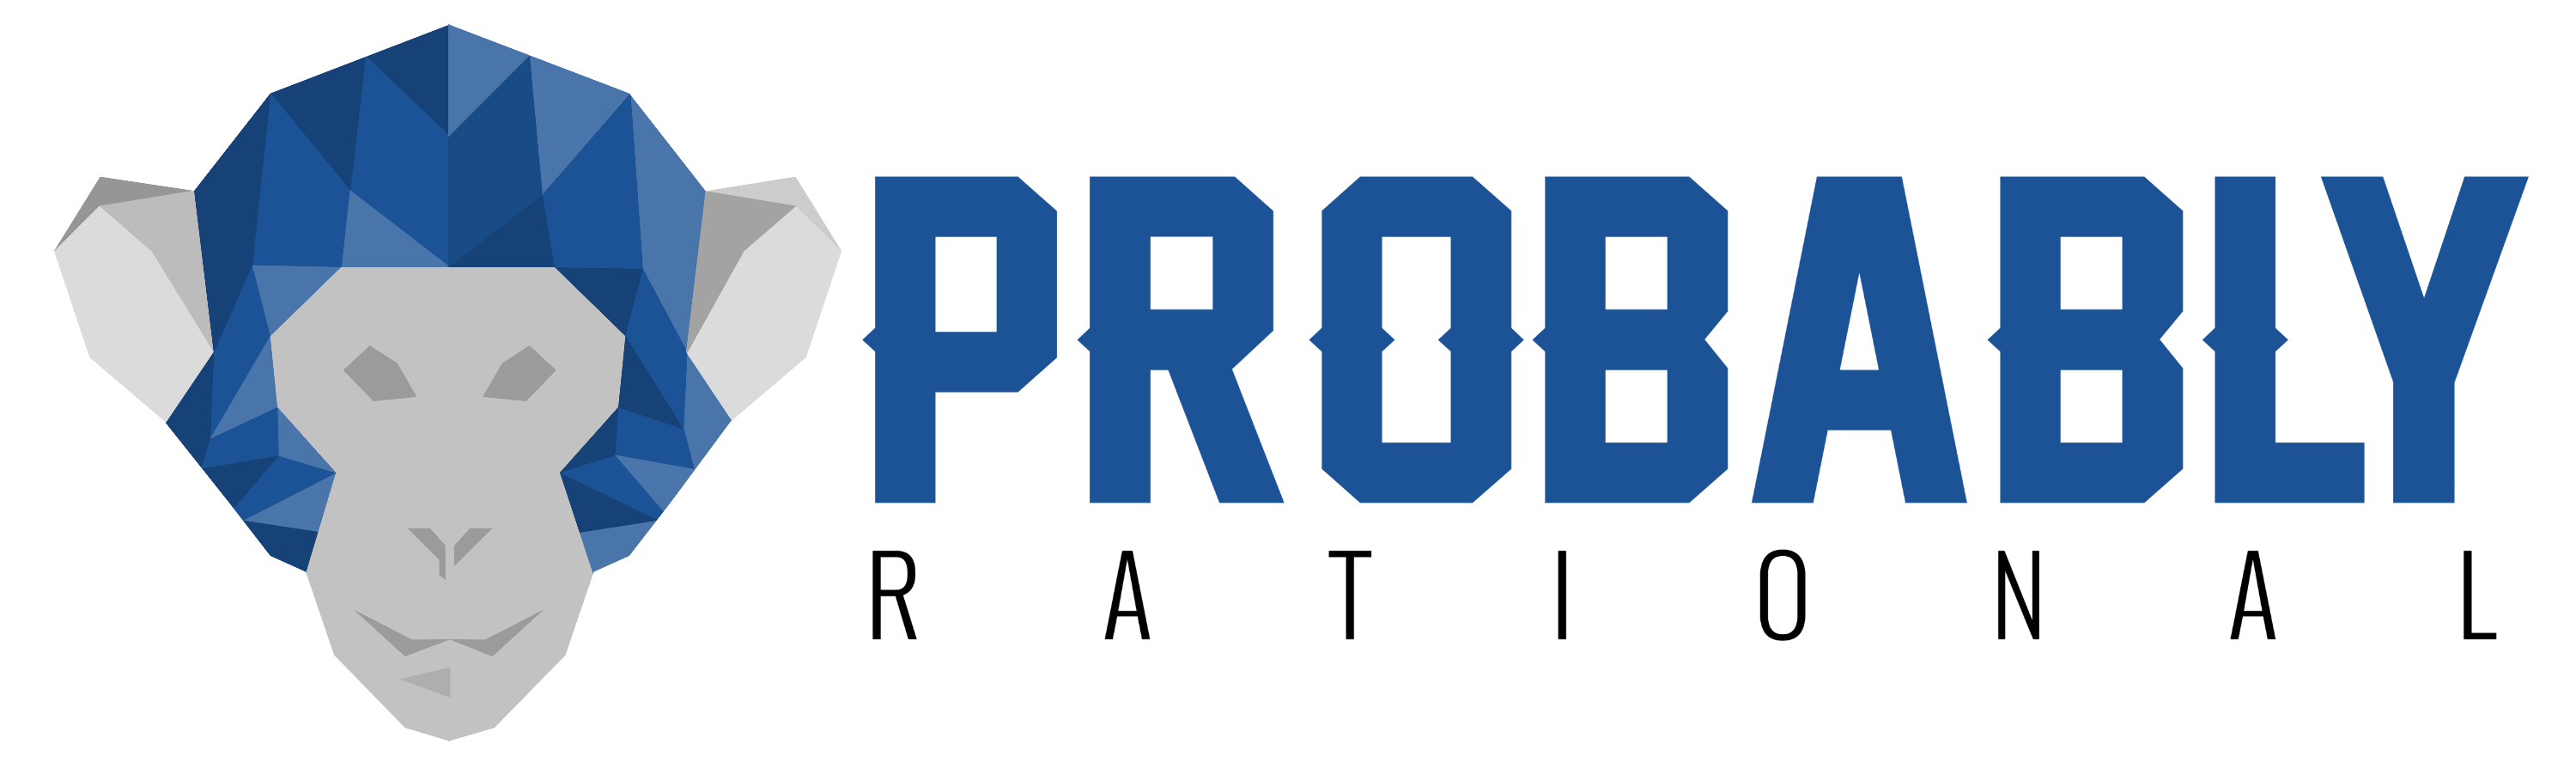 logo for Probably Rational Ltd.